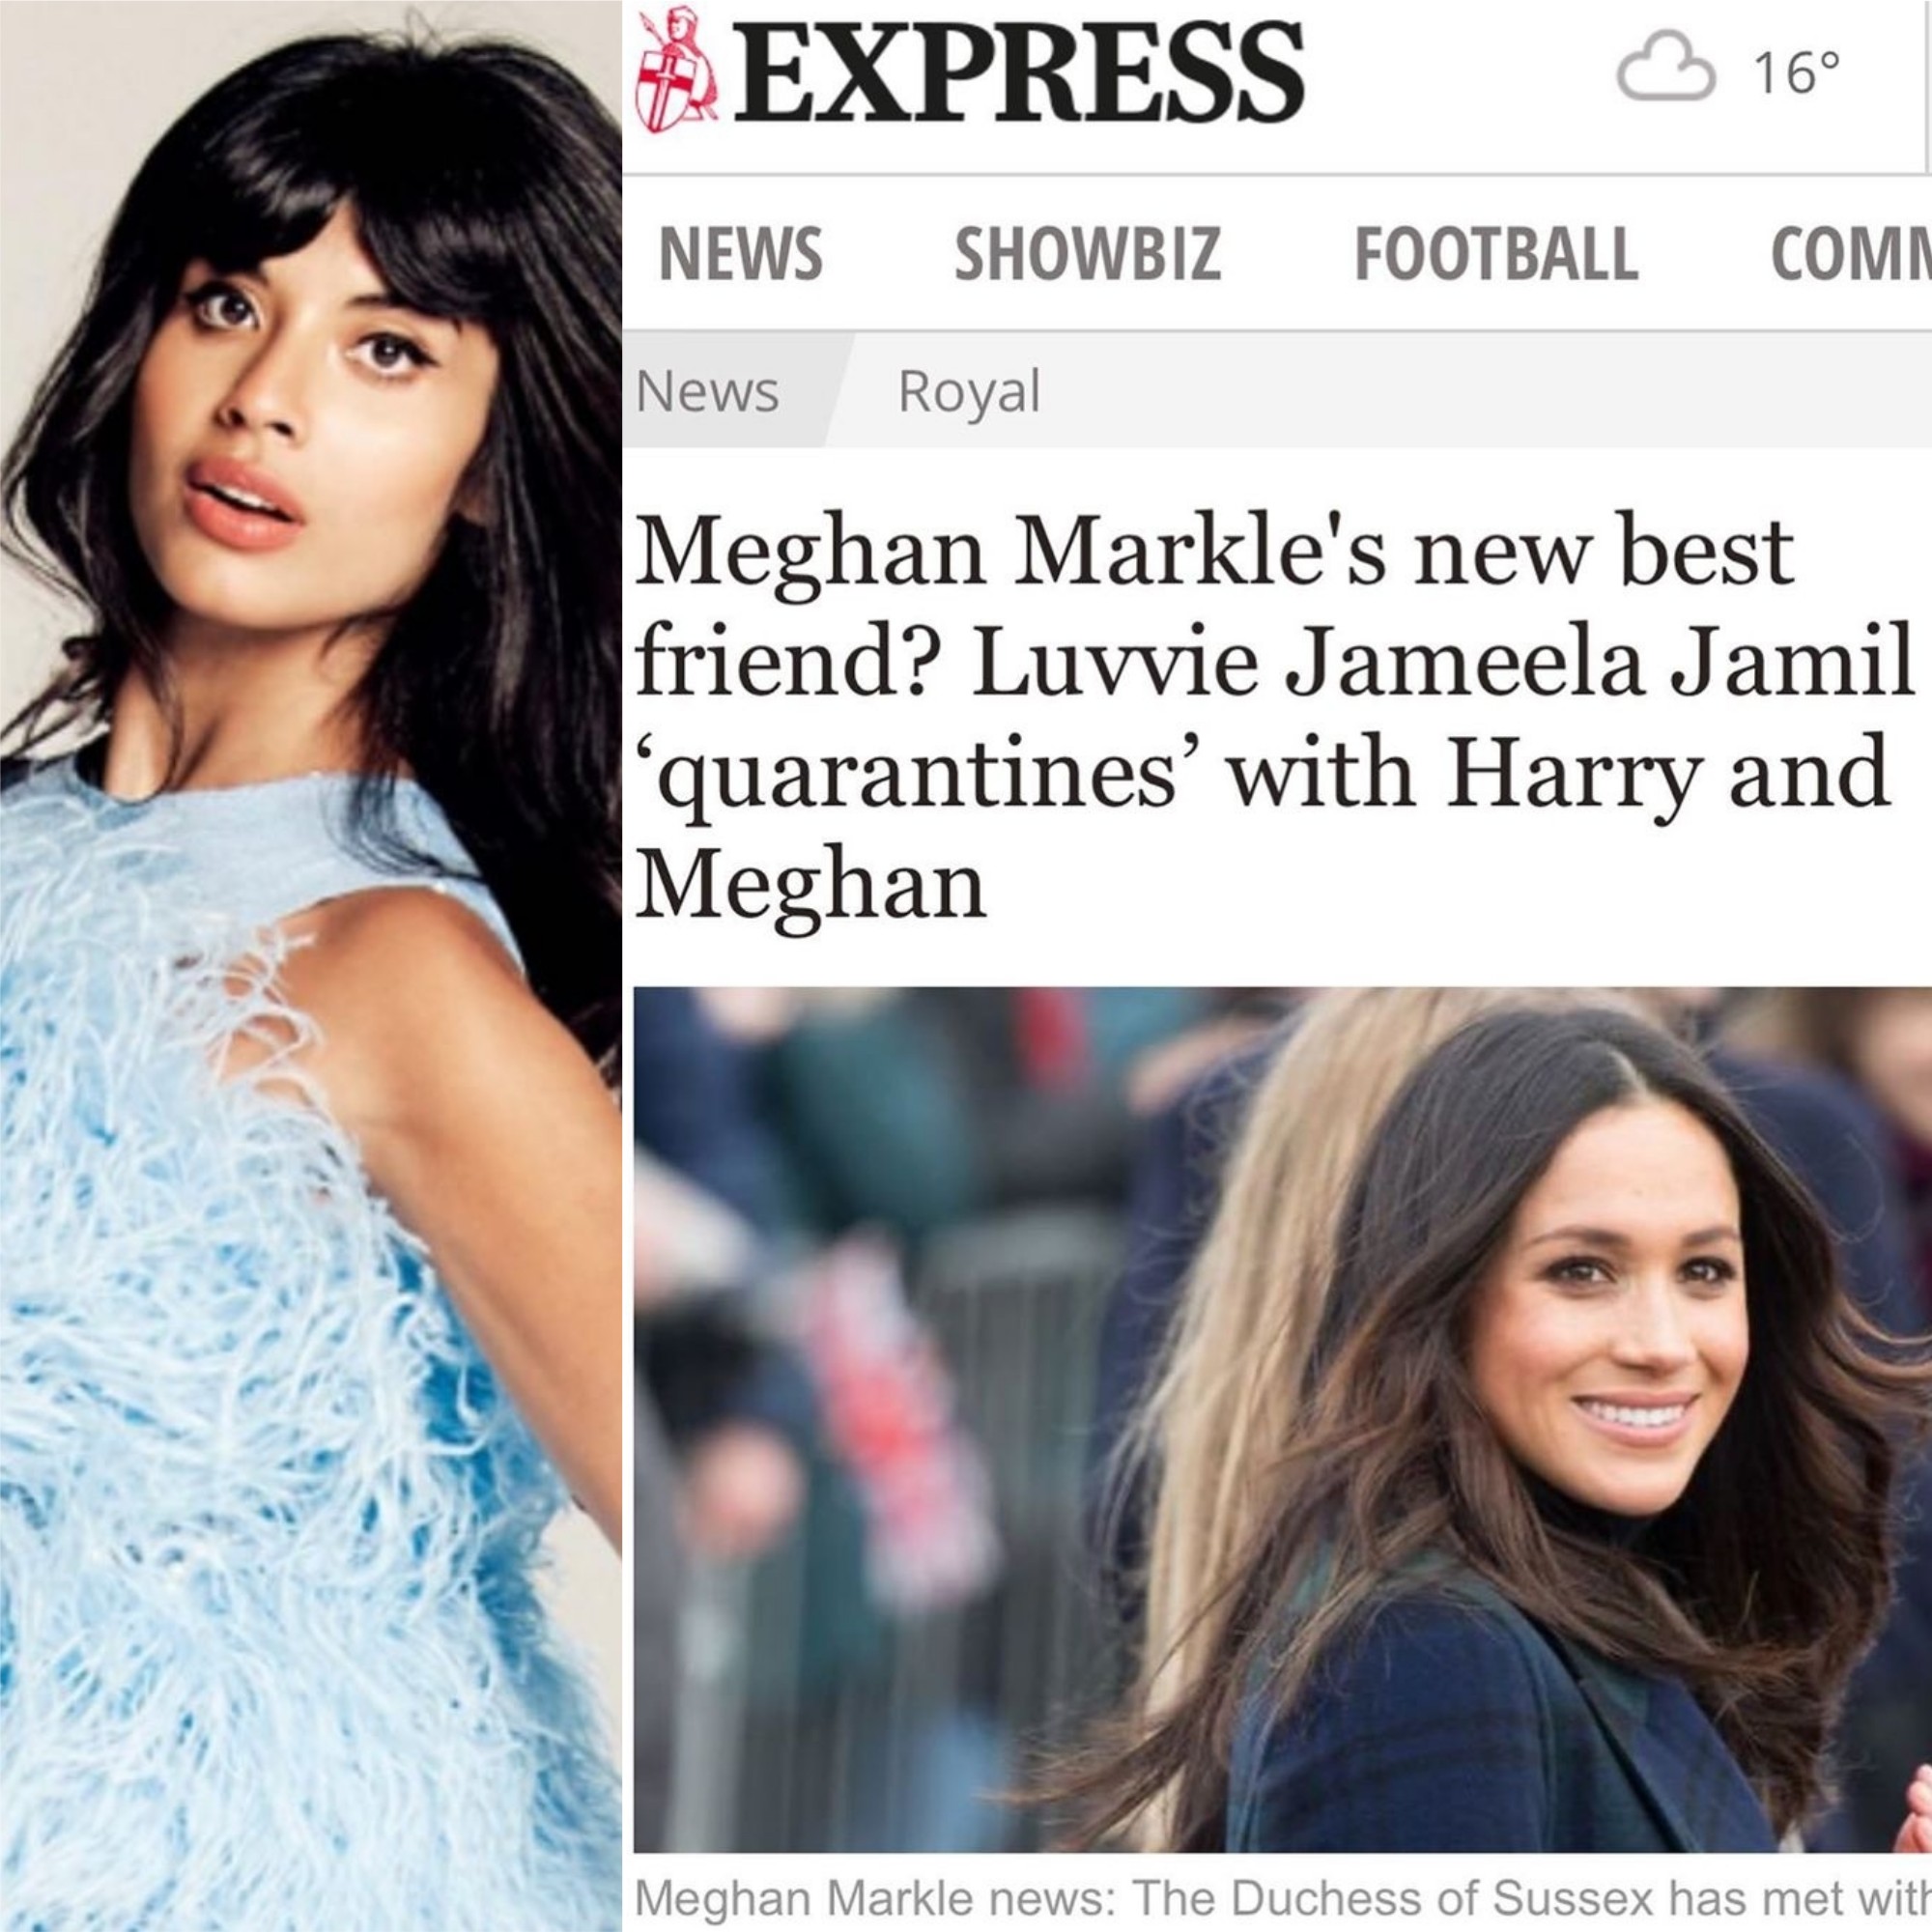 Jameela Jamil desmentiu tabloide britânico que afirmou que ela e Meghan Markle são, agora, melhores amigas (Foto: Reprodução/Instagram)